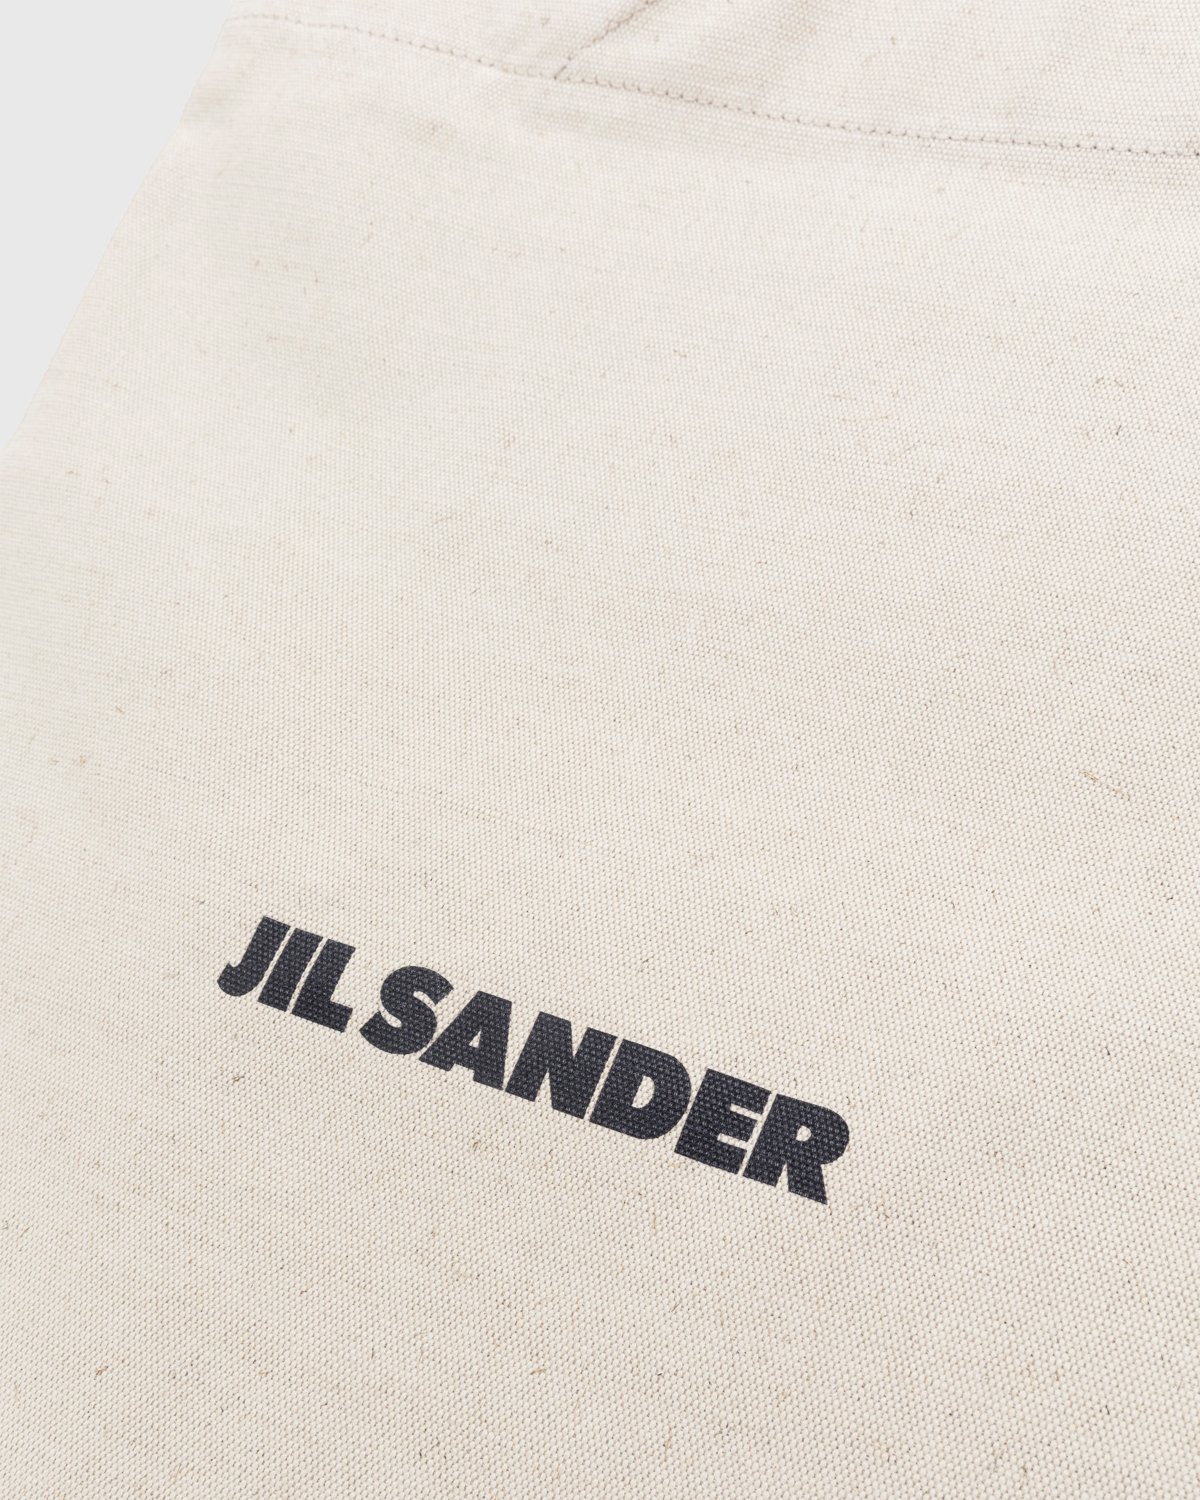 Jil Sander - Large Flat Shopper Natural - Accessories - Beige - Image 6